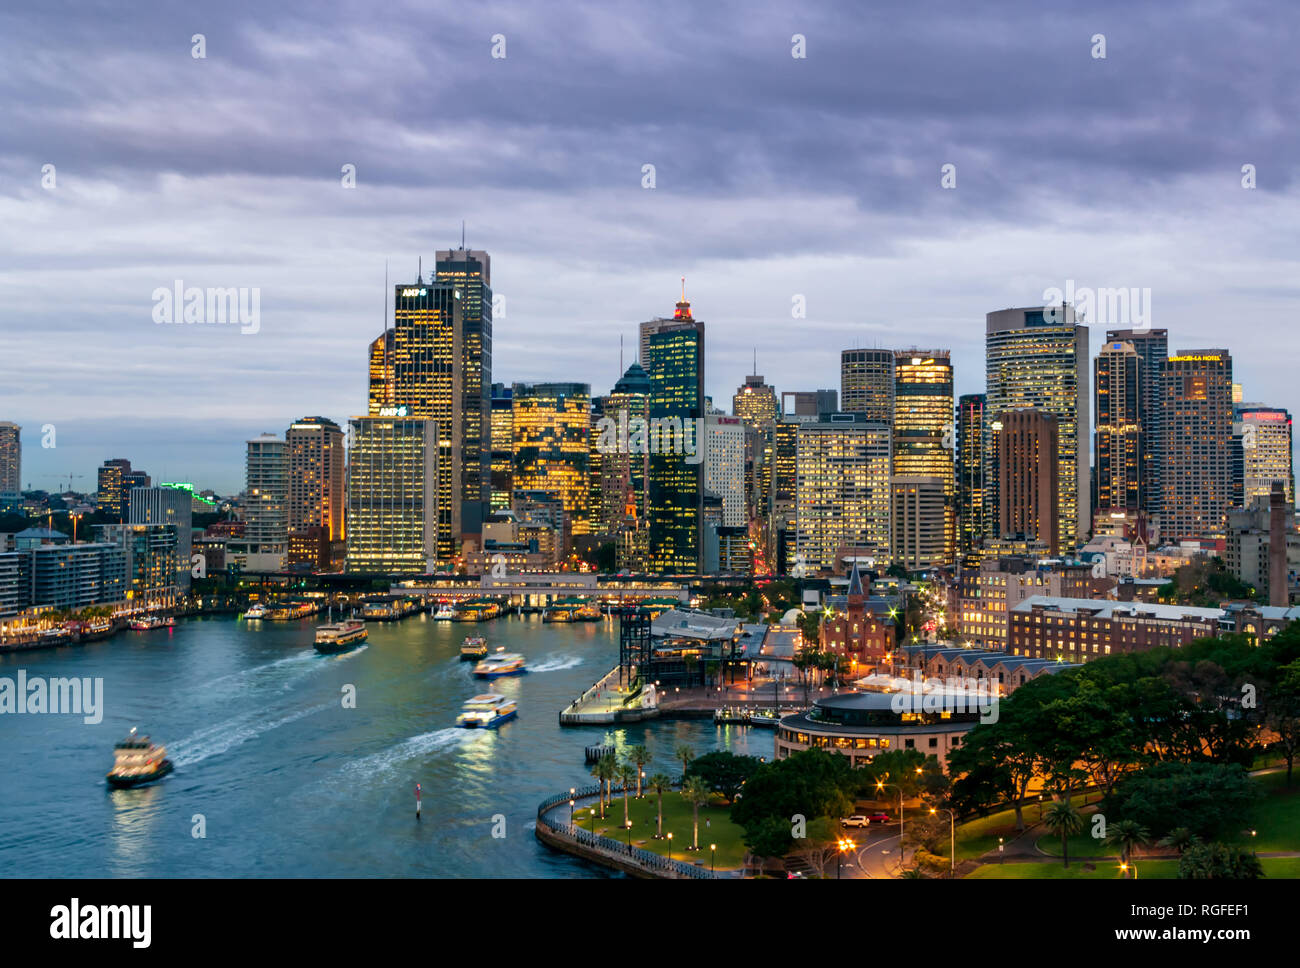 Sydney, New South Wales/Australien - 21. August 2016: Blaue Stunde schoss der Sydney Harbour und die beleuchtete Skyline der Stadt mit einem dunklen bewölkter Himmel Stockfoto